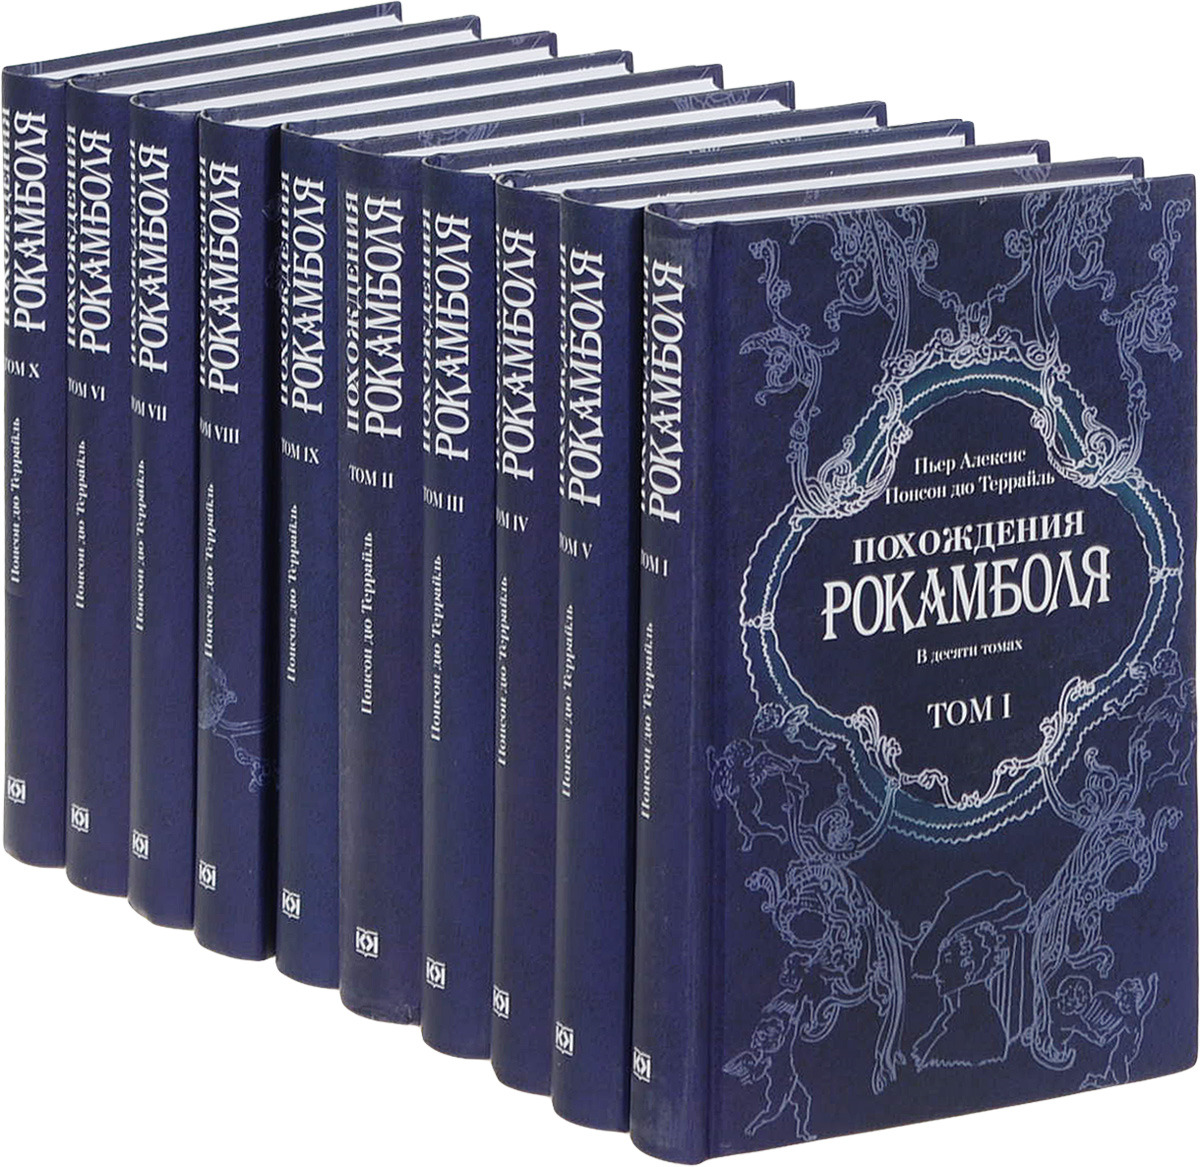 Пьер Алексис Понсон дю Террайль Похождения Рокамболя (комплект из 10 книг)